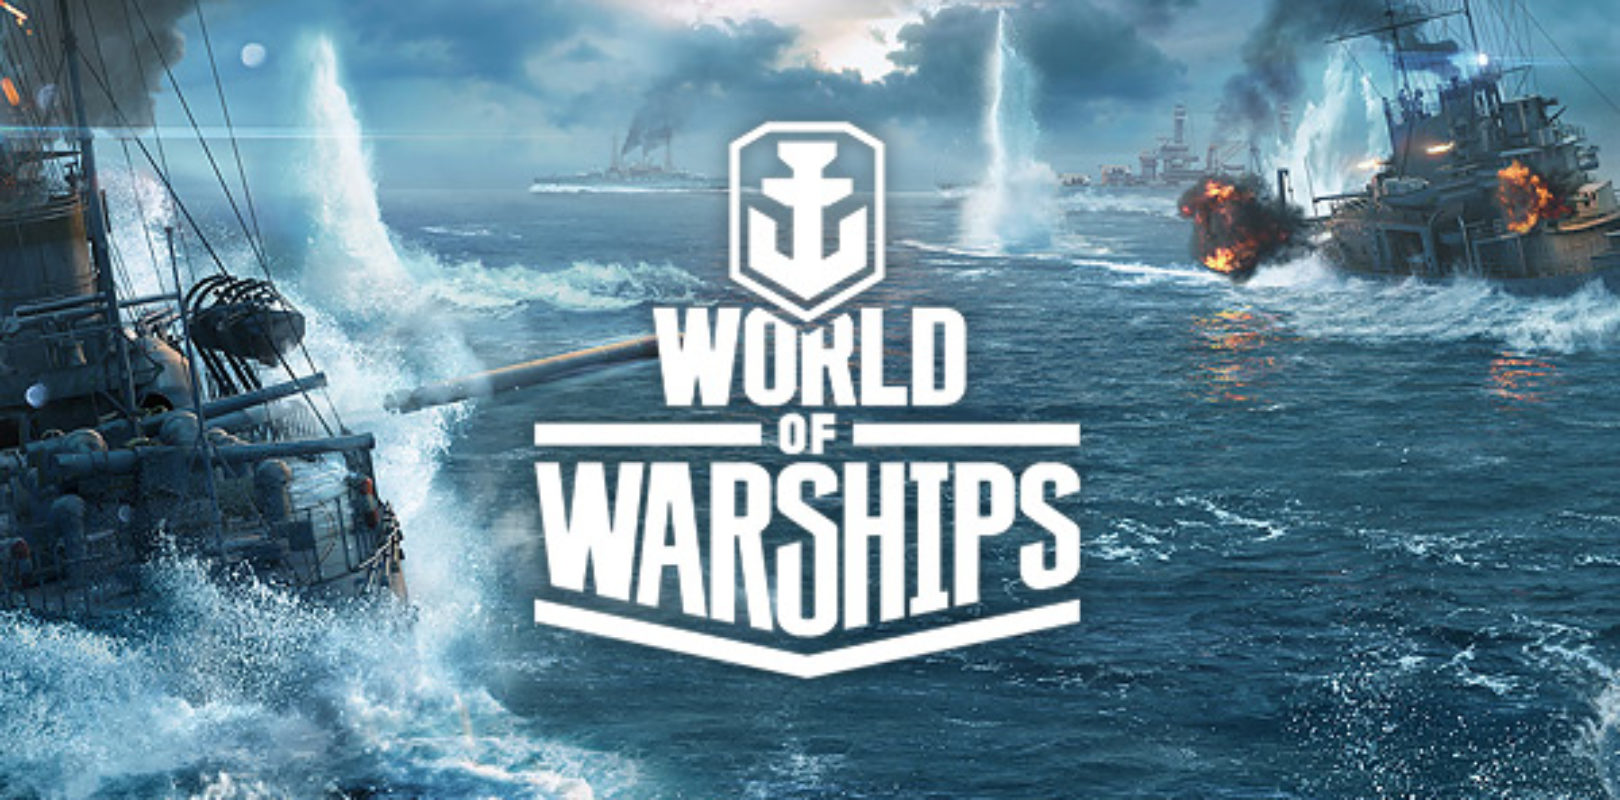 world of warships bonus codes july 2018